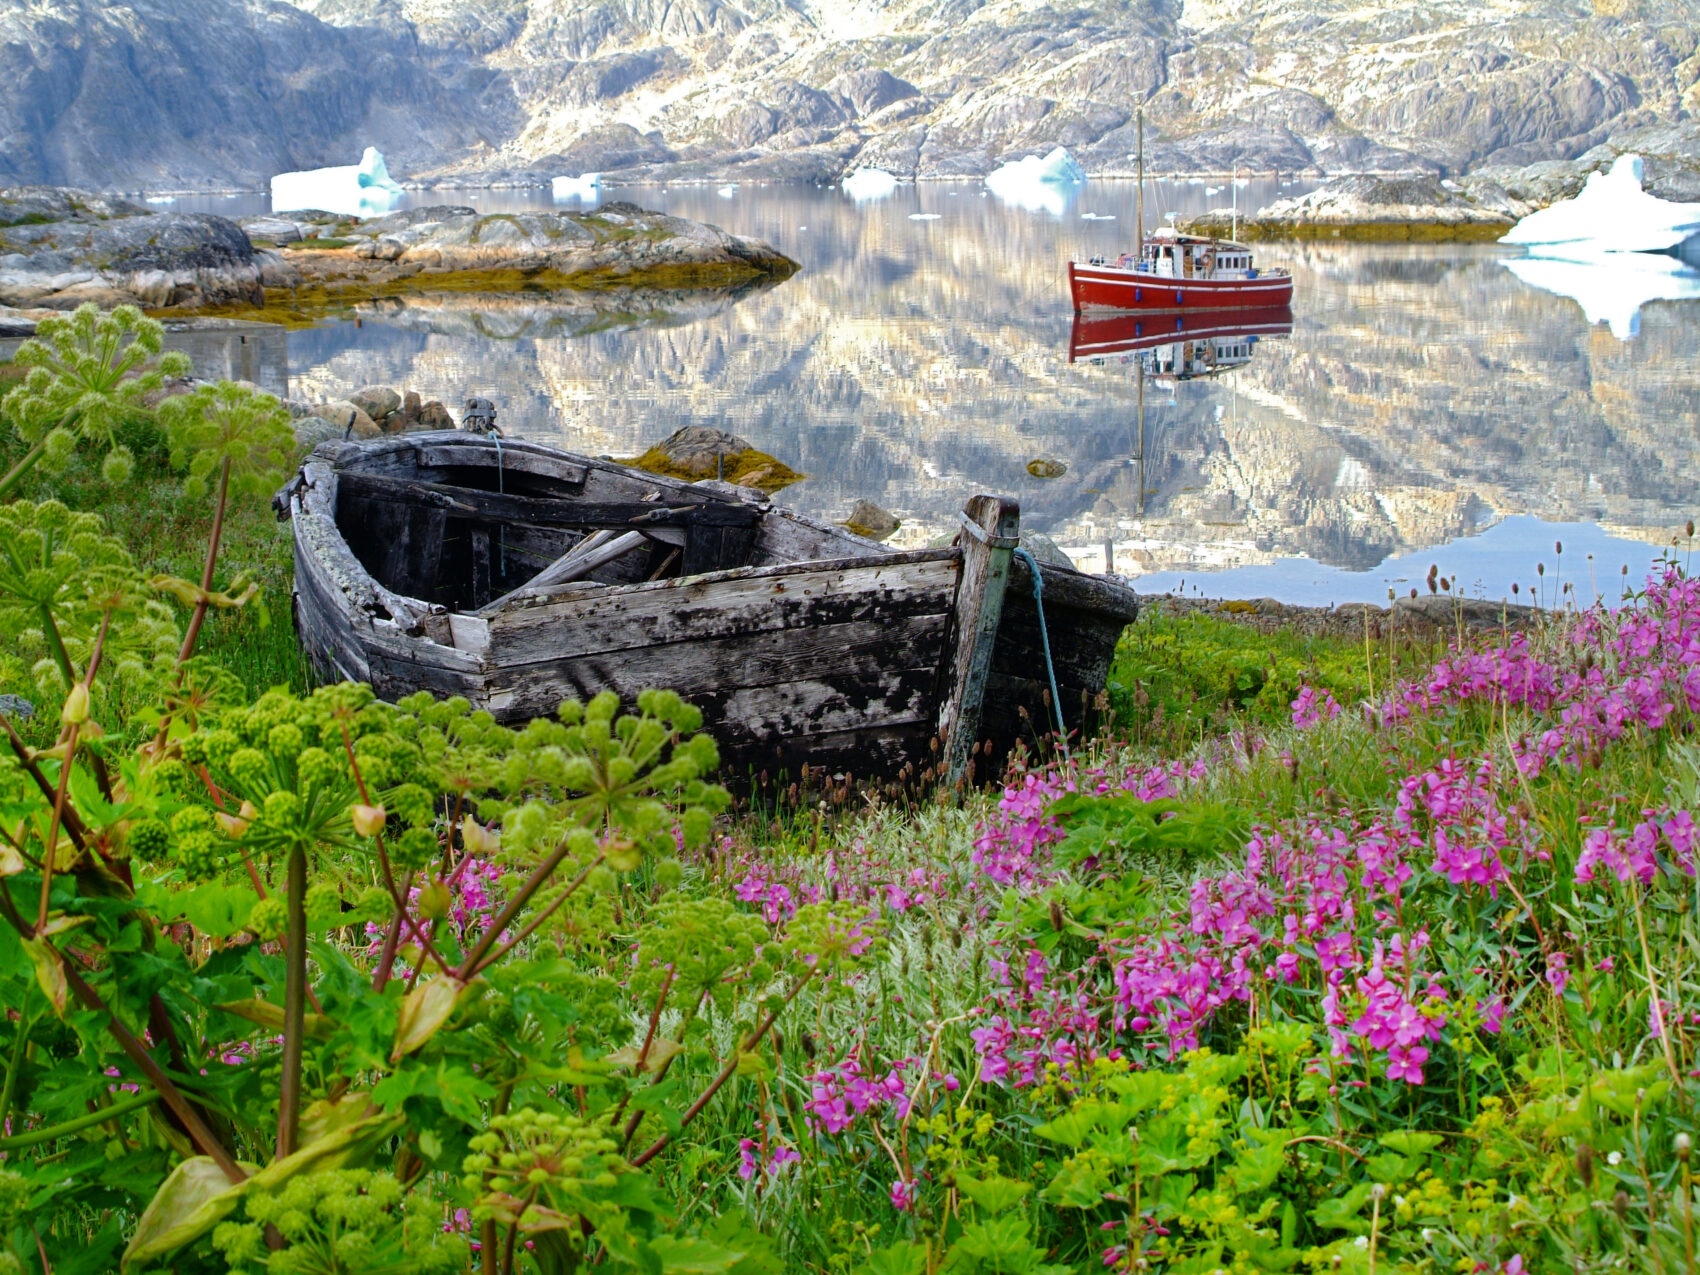 Ostgrönland Bucht mit Blumen, altes Boot steht auf Wiese, sattes grün umgibt die Landschaft, im Hintergrund schroffes Gebirge und treibende Eisschollen